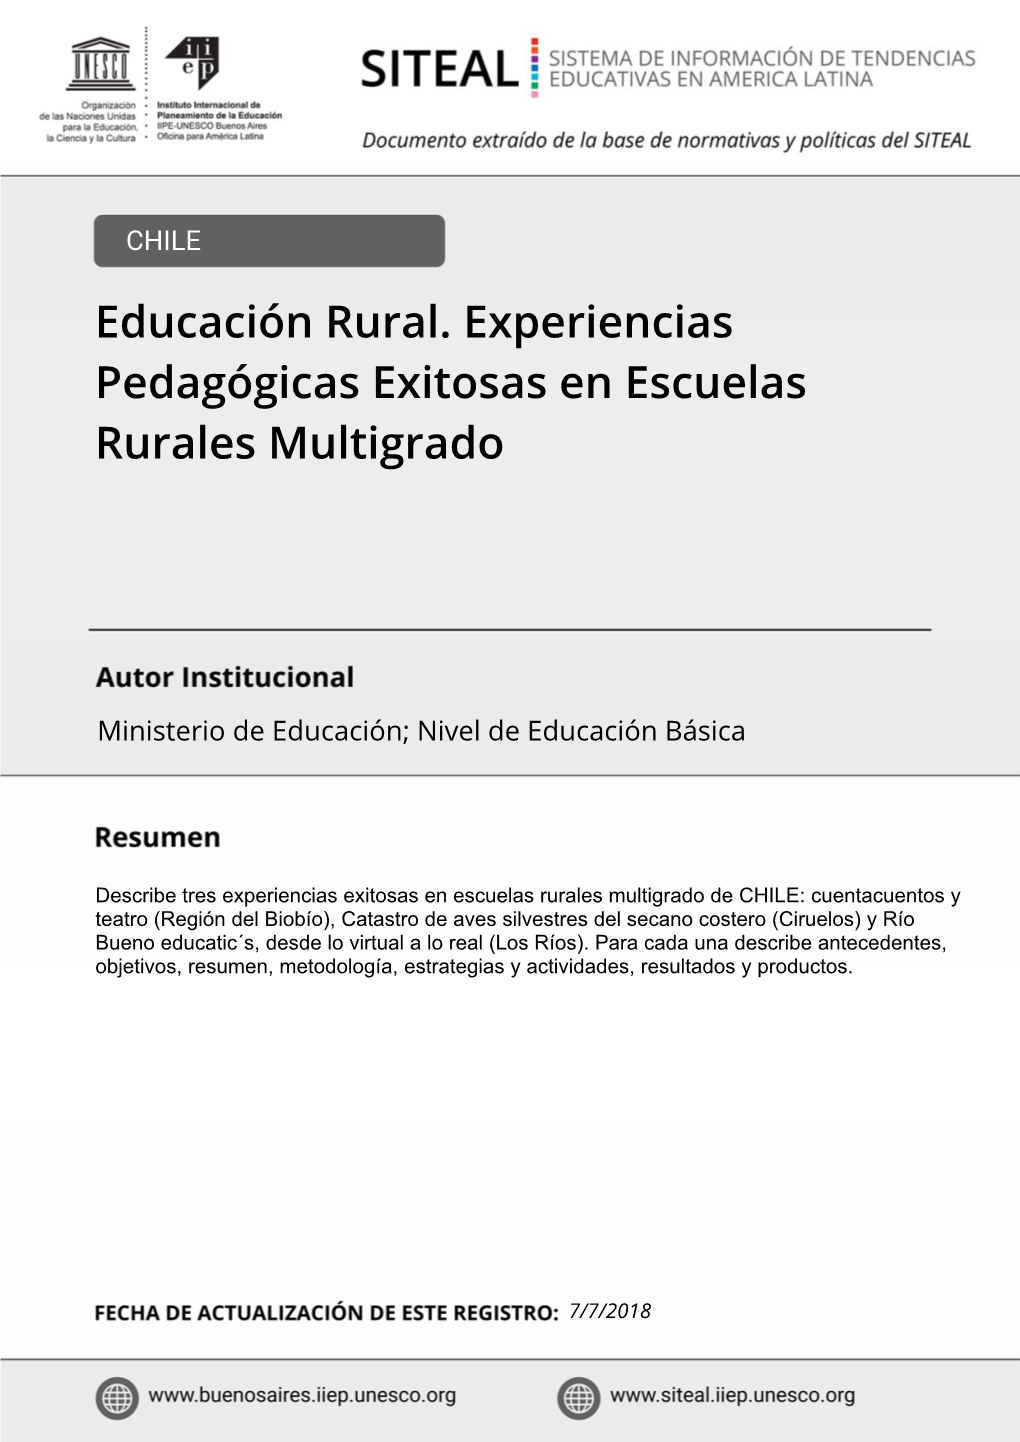 Educación Rural. Experiencias Pedagógicas Exitosas En Escuelas Rurales Multigrado